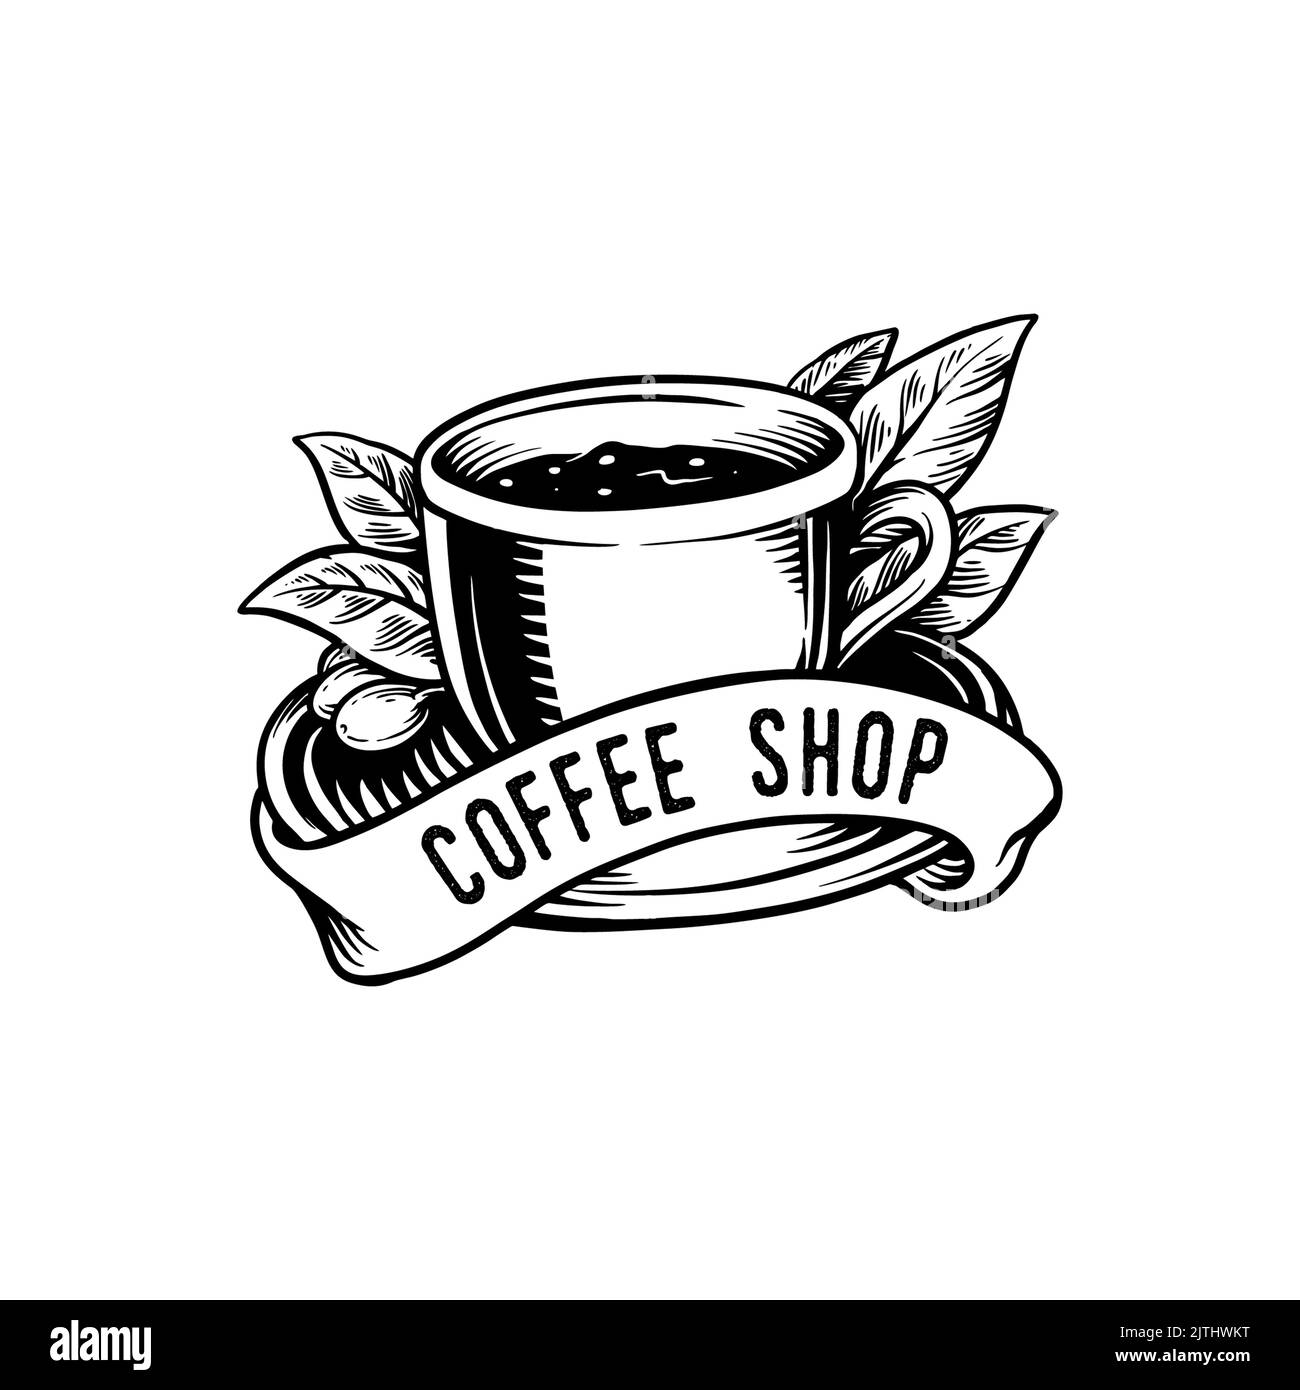 Coffee Shop semplice classica Silhouette con logo illustrazioni vettoriali per il tuo lavoro Logo, mascotte merchandise t-shirt, adesivi e disegni di etichette, poster, gr Foto Stock